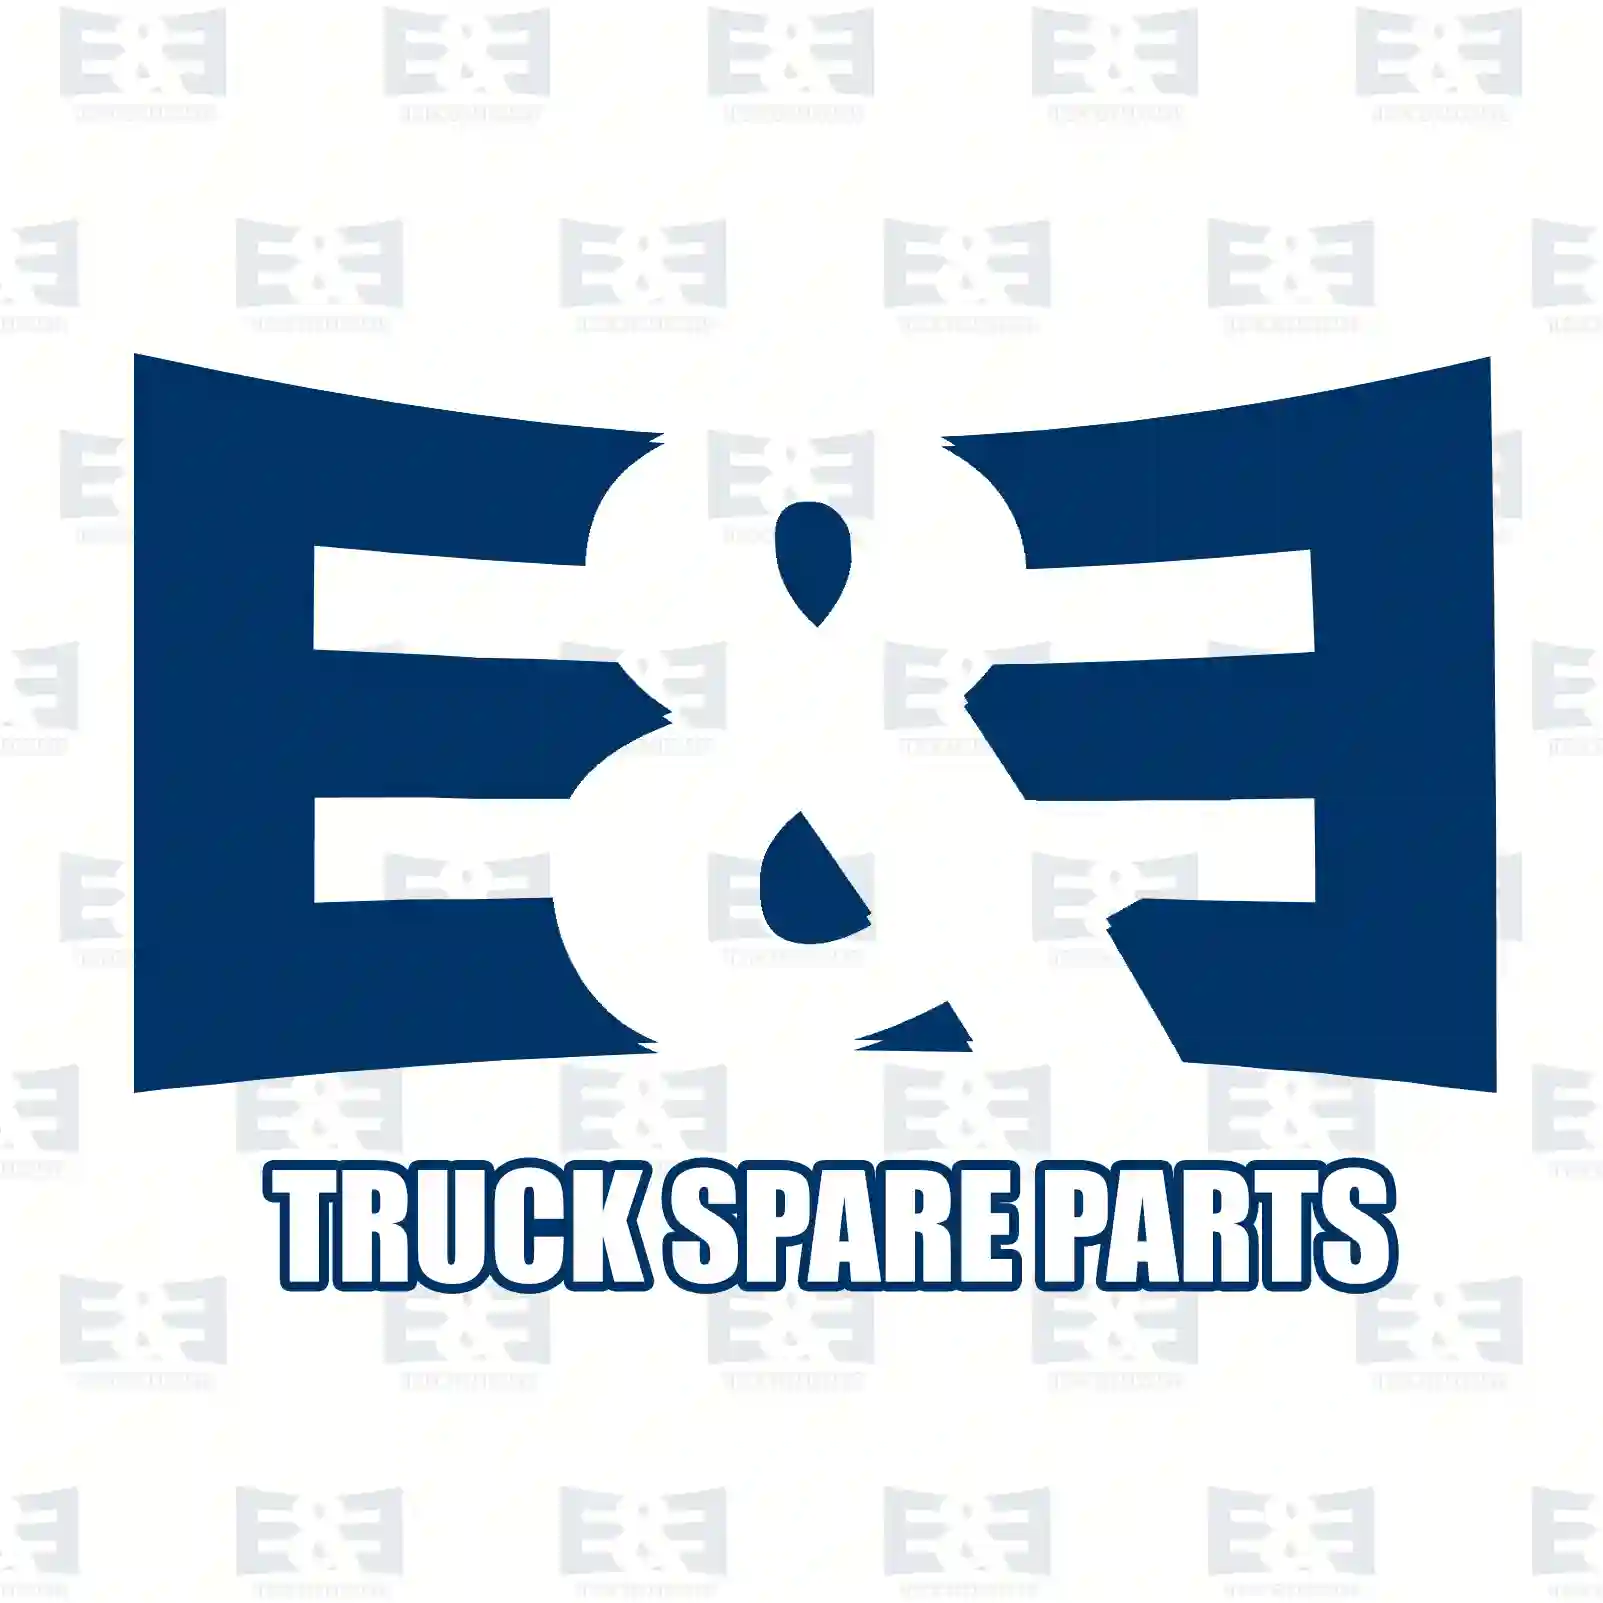 Repair kit, axle lift, 2E2281170, 20442252S, ZG30109-0008 ||  2E2281170 E&E Truck Spare Parts | Truck Spare Parts, Auotomotive Spare Parts Repair kit, axle lift, 2E2281170, 20442252S, ZG30109-0008 ||  2E2281170 E&E Truck Spare Parts | Truck Spare Parts, Auotomotive Spare Parts